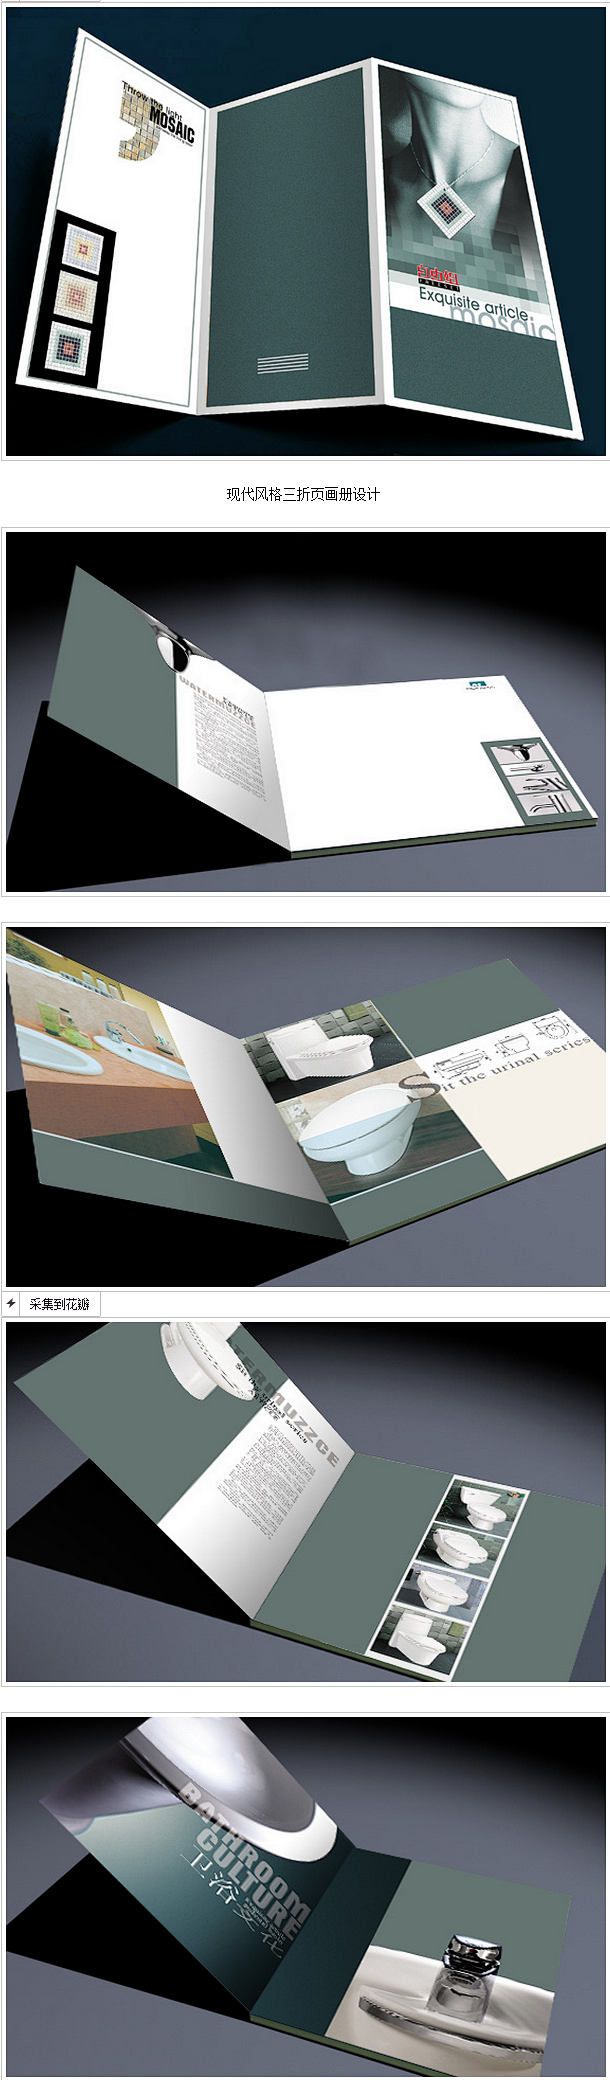 卫浴文化画册设计作品（02）-画册设计-...